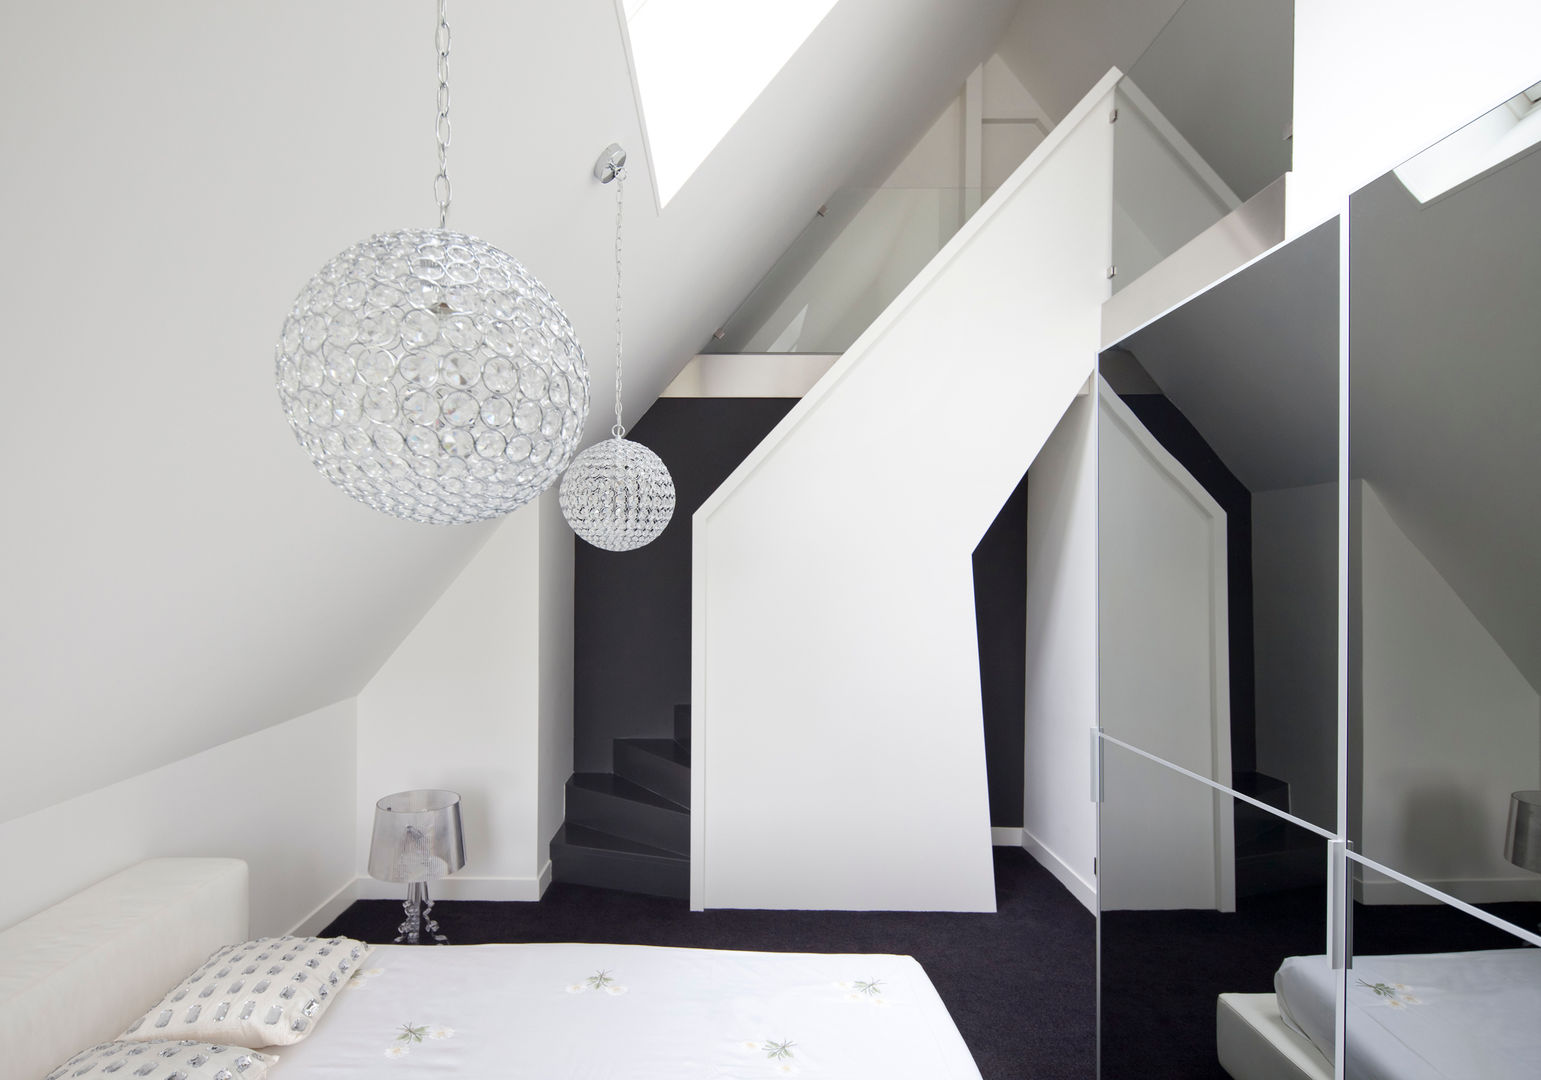 Omgeving & functionaliteit verbonden in een verbazingwekkende villa in Vinkeveen, MEF Architect MEF Architect غرفة نوم